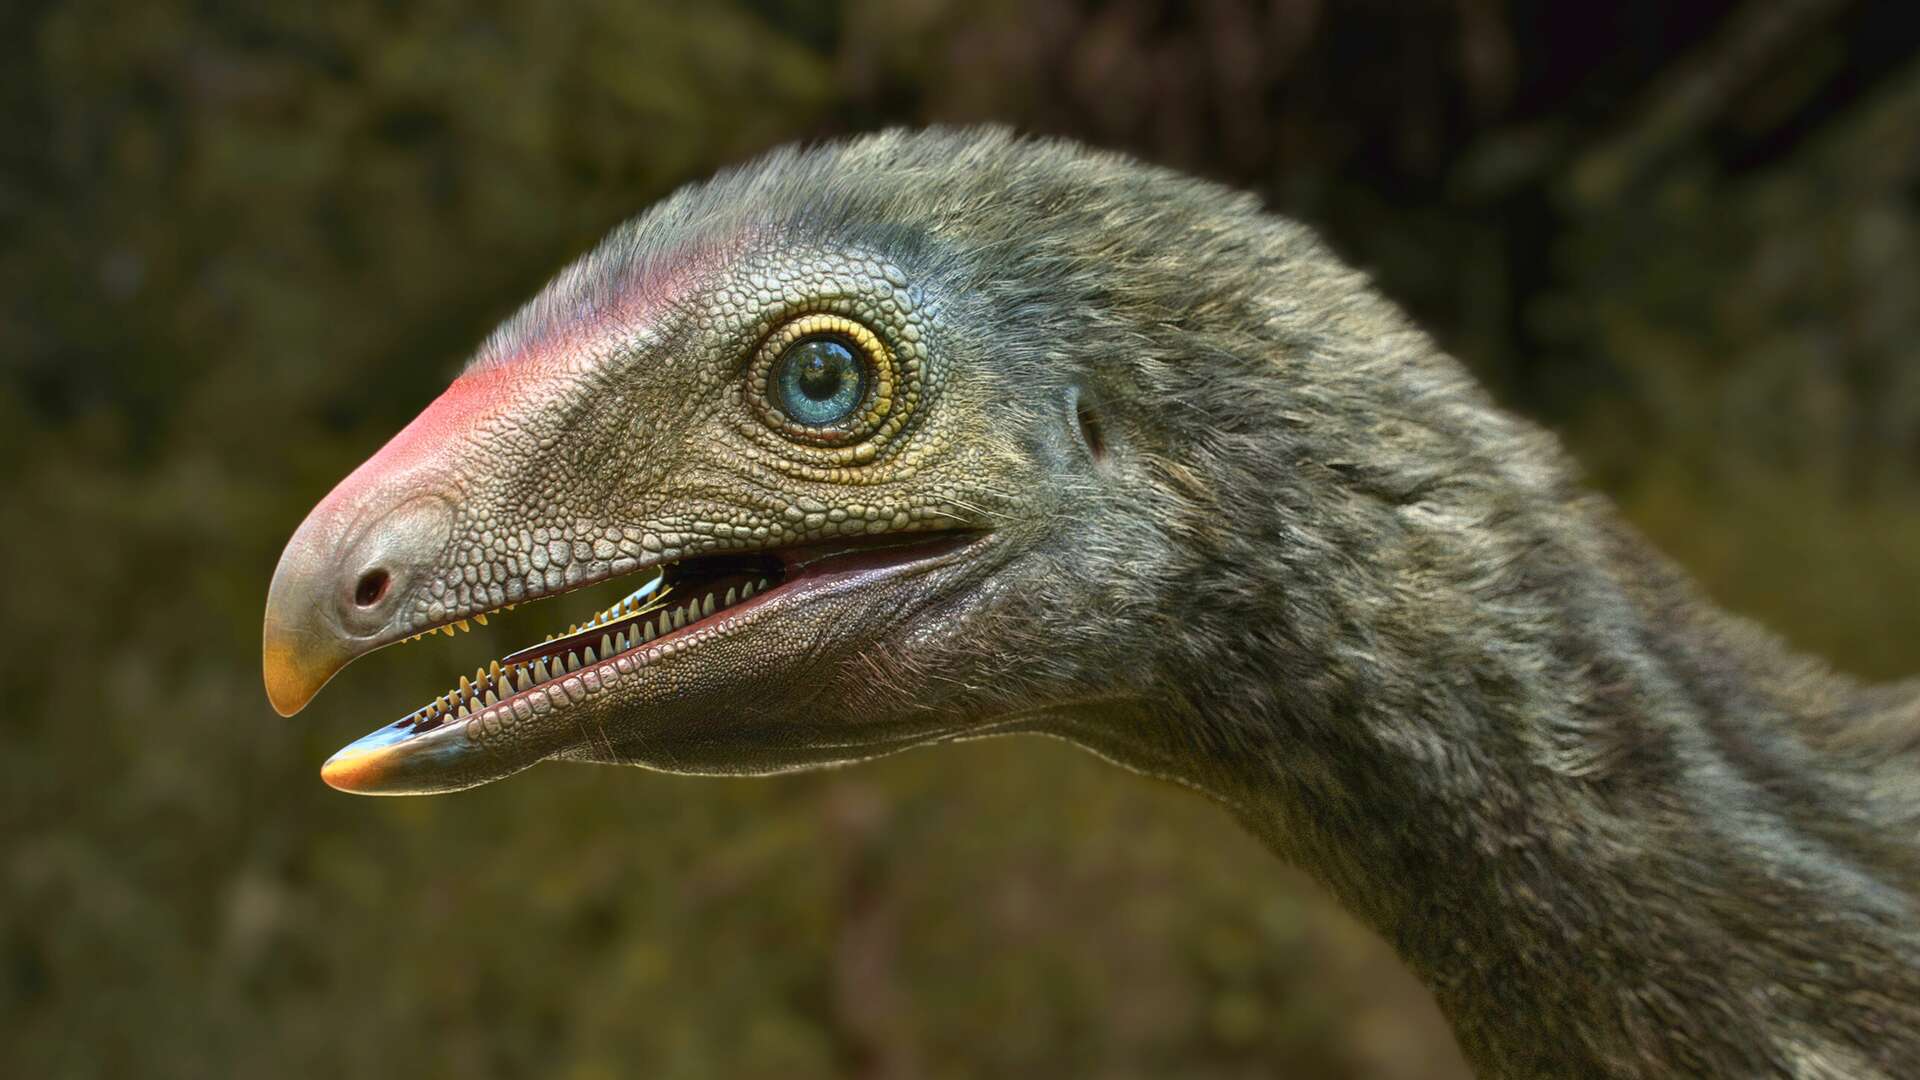 Ce parent des dinosaures et des ptérosaures avait un bec crochu et des griffes tranchantes